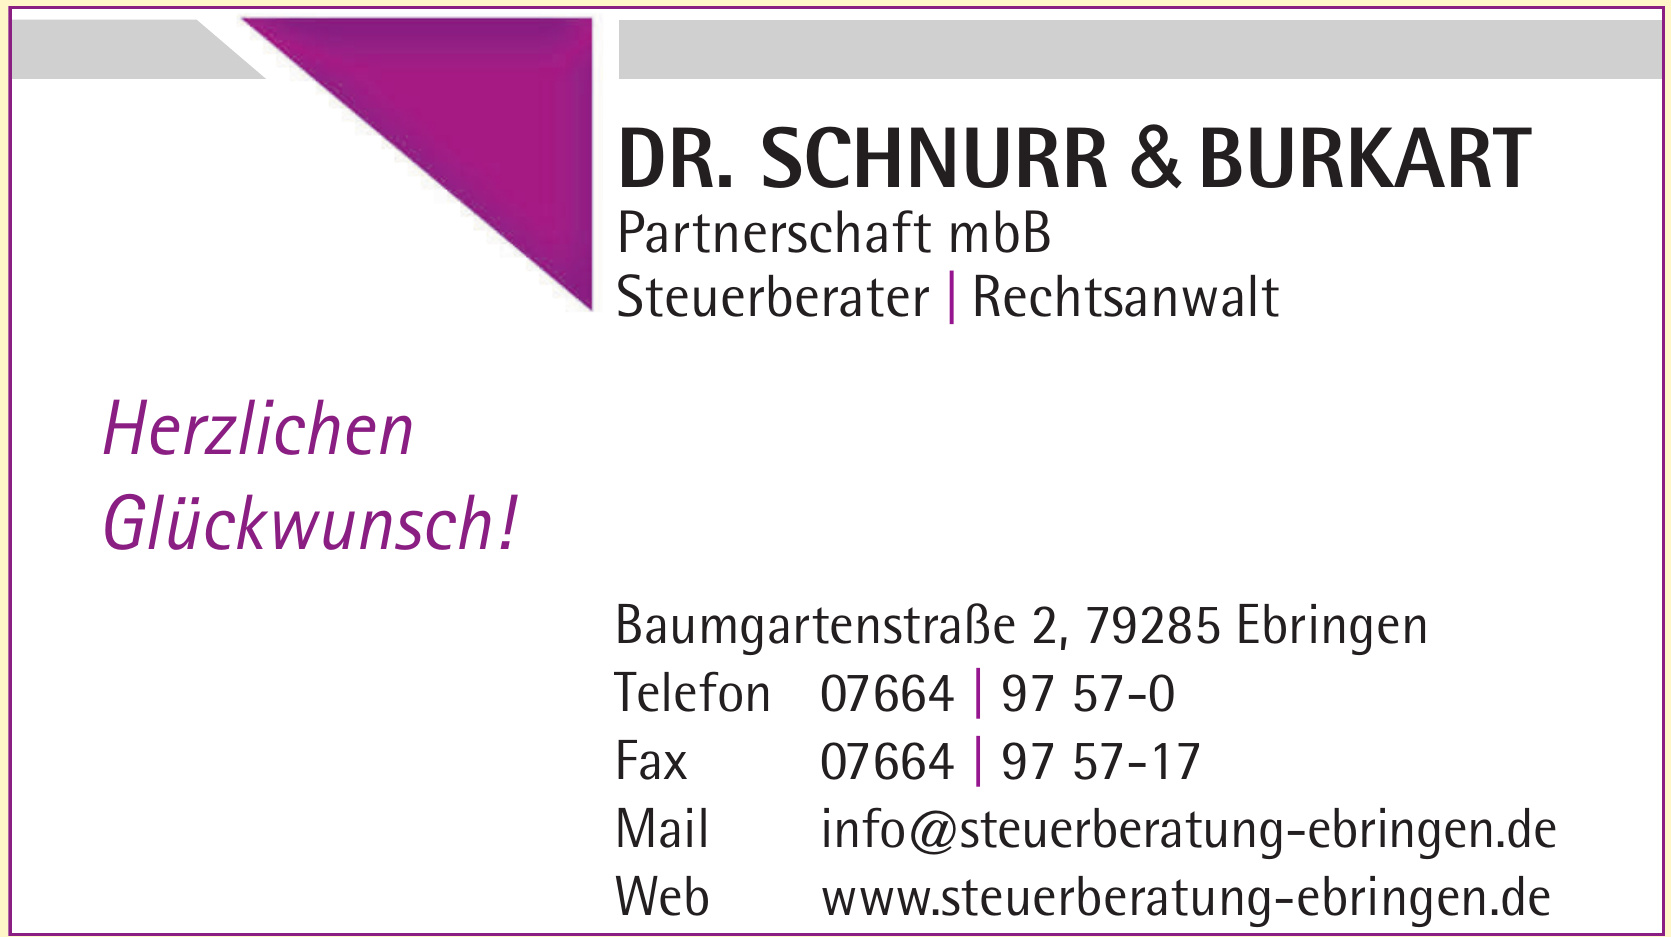 Dr. Schnurr & Burkart Partnerschaft mbB